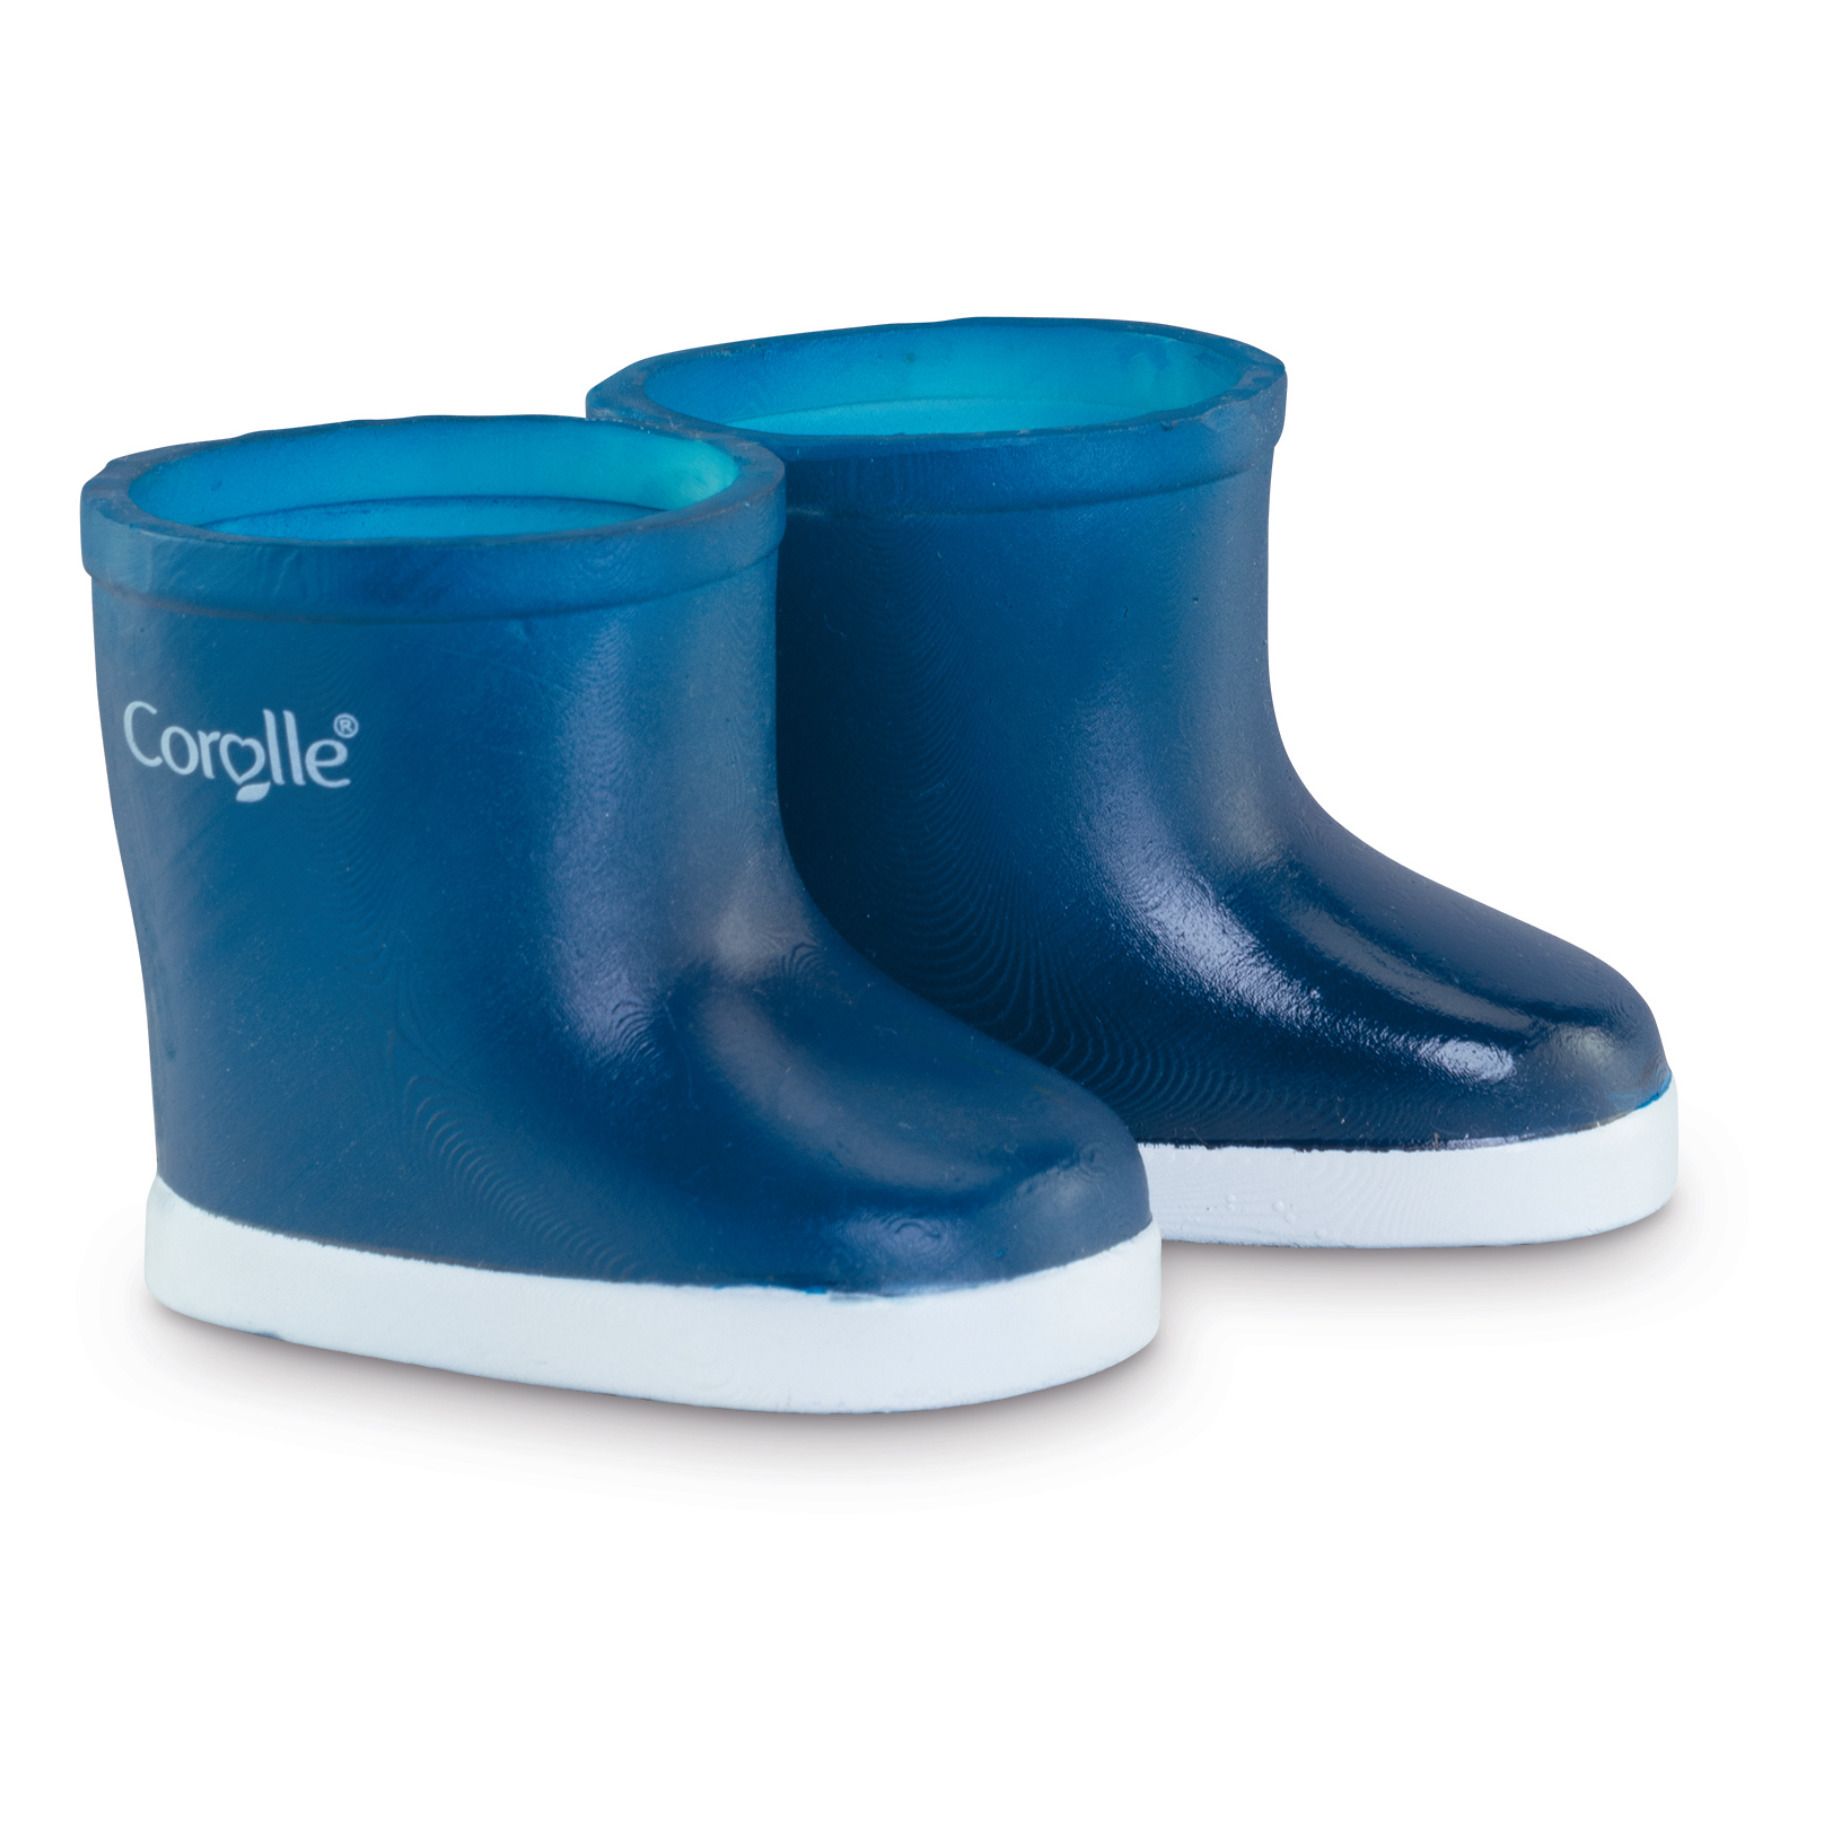 Corolle - Mon grand poupon - Bottes de pluie - Bleu marine